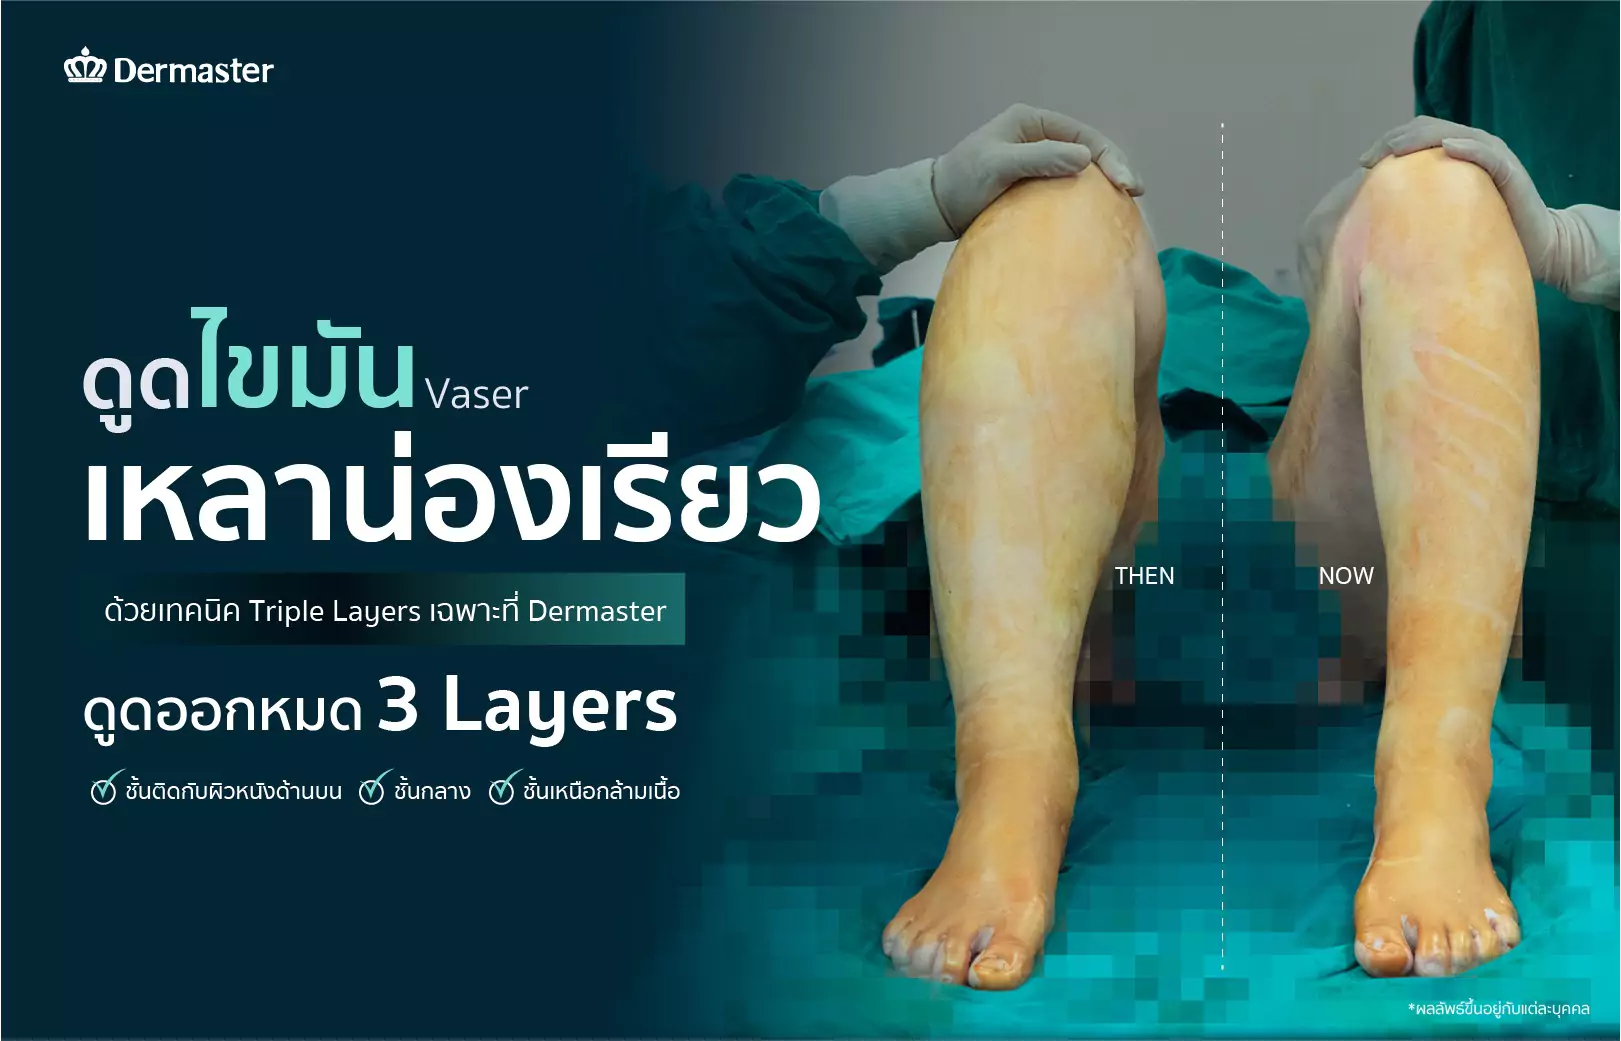 dermaster-thailand-vaser-ดูดไขมัน-review-9